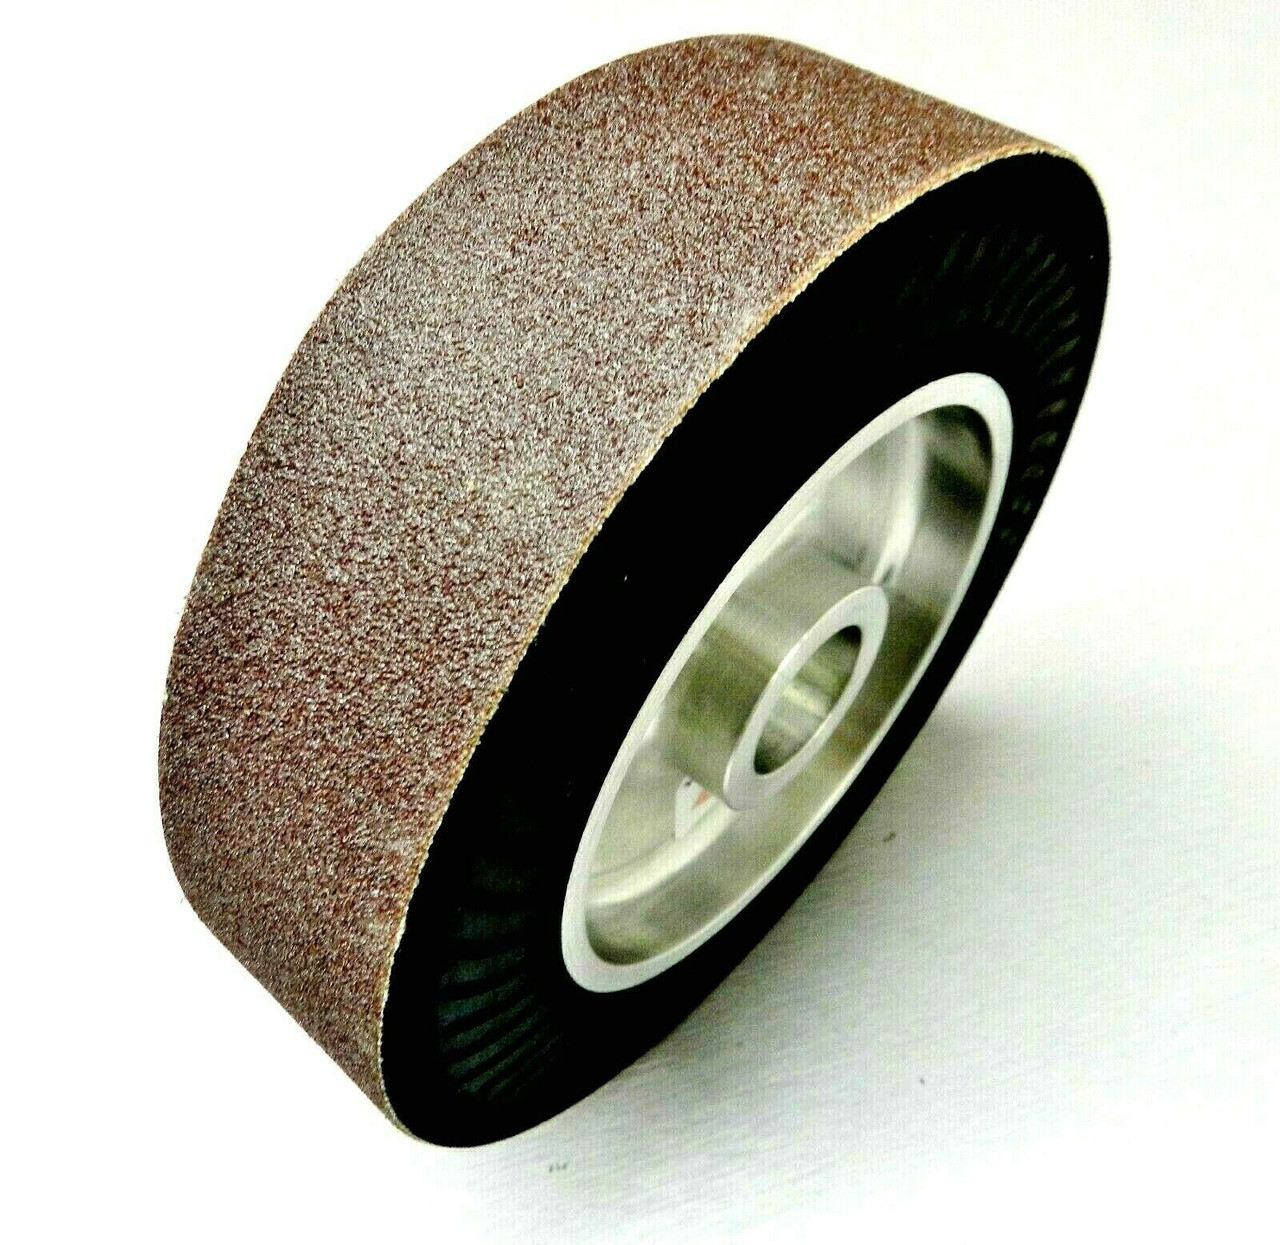 6" Abrasive Sanding Belt for Expanding Drum Sander Aluminum Oxide 80 Grit 10 Pk